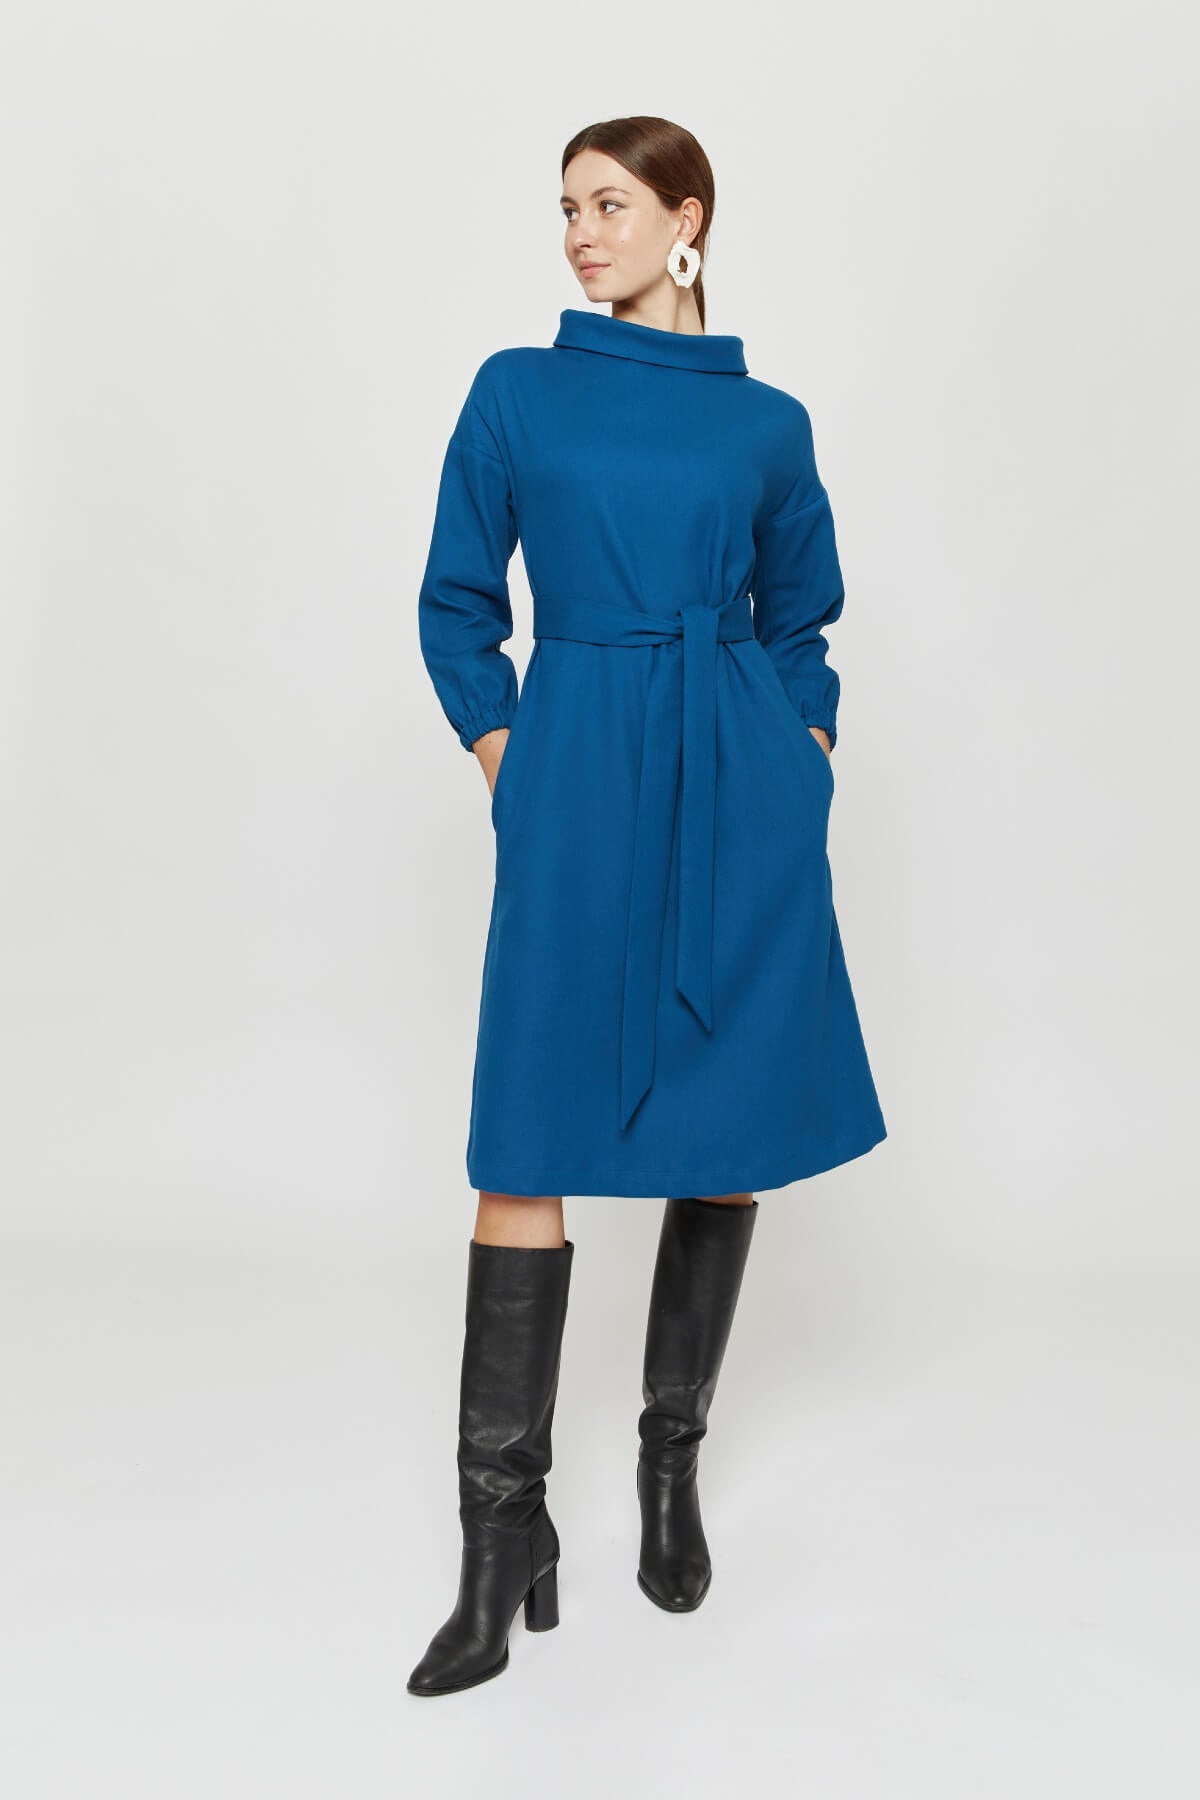 Blue midi dress Amalia made of 100% organic cotton by Ayani